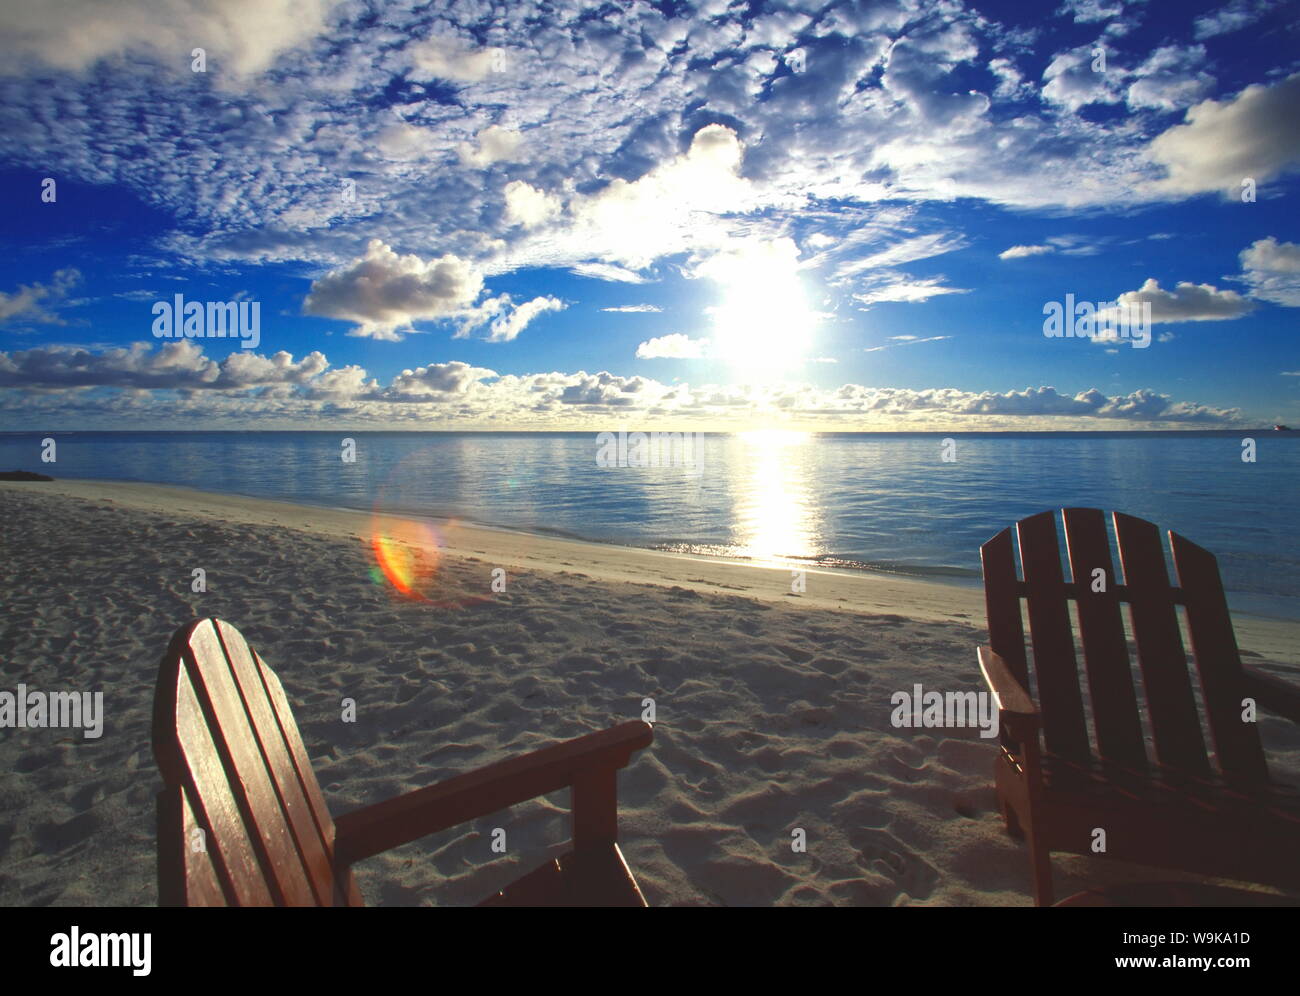 Due sedie a sdraio sulla spiaggia al tramonto, Maldive, Oceano Indiano, Asia Foto Stock